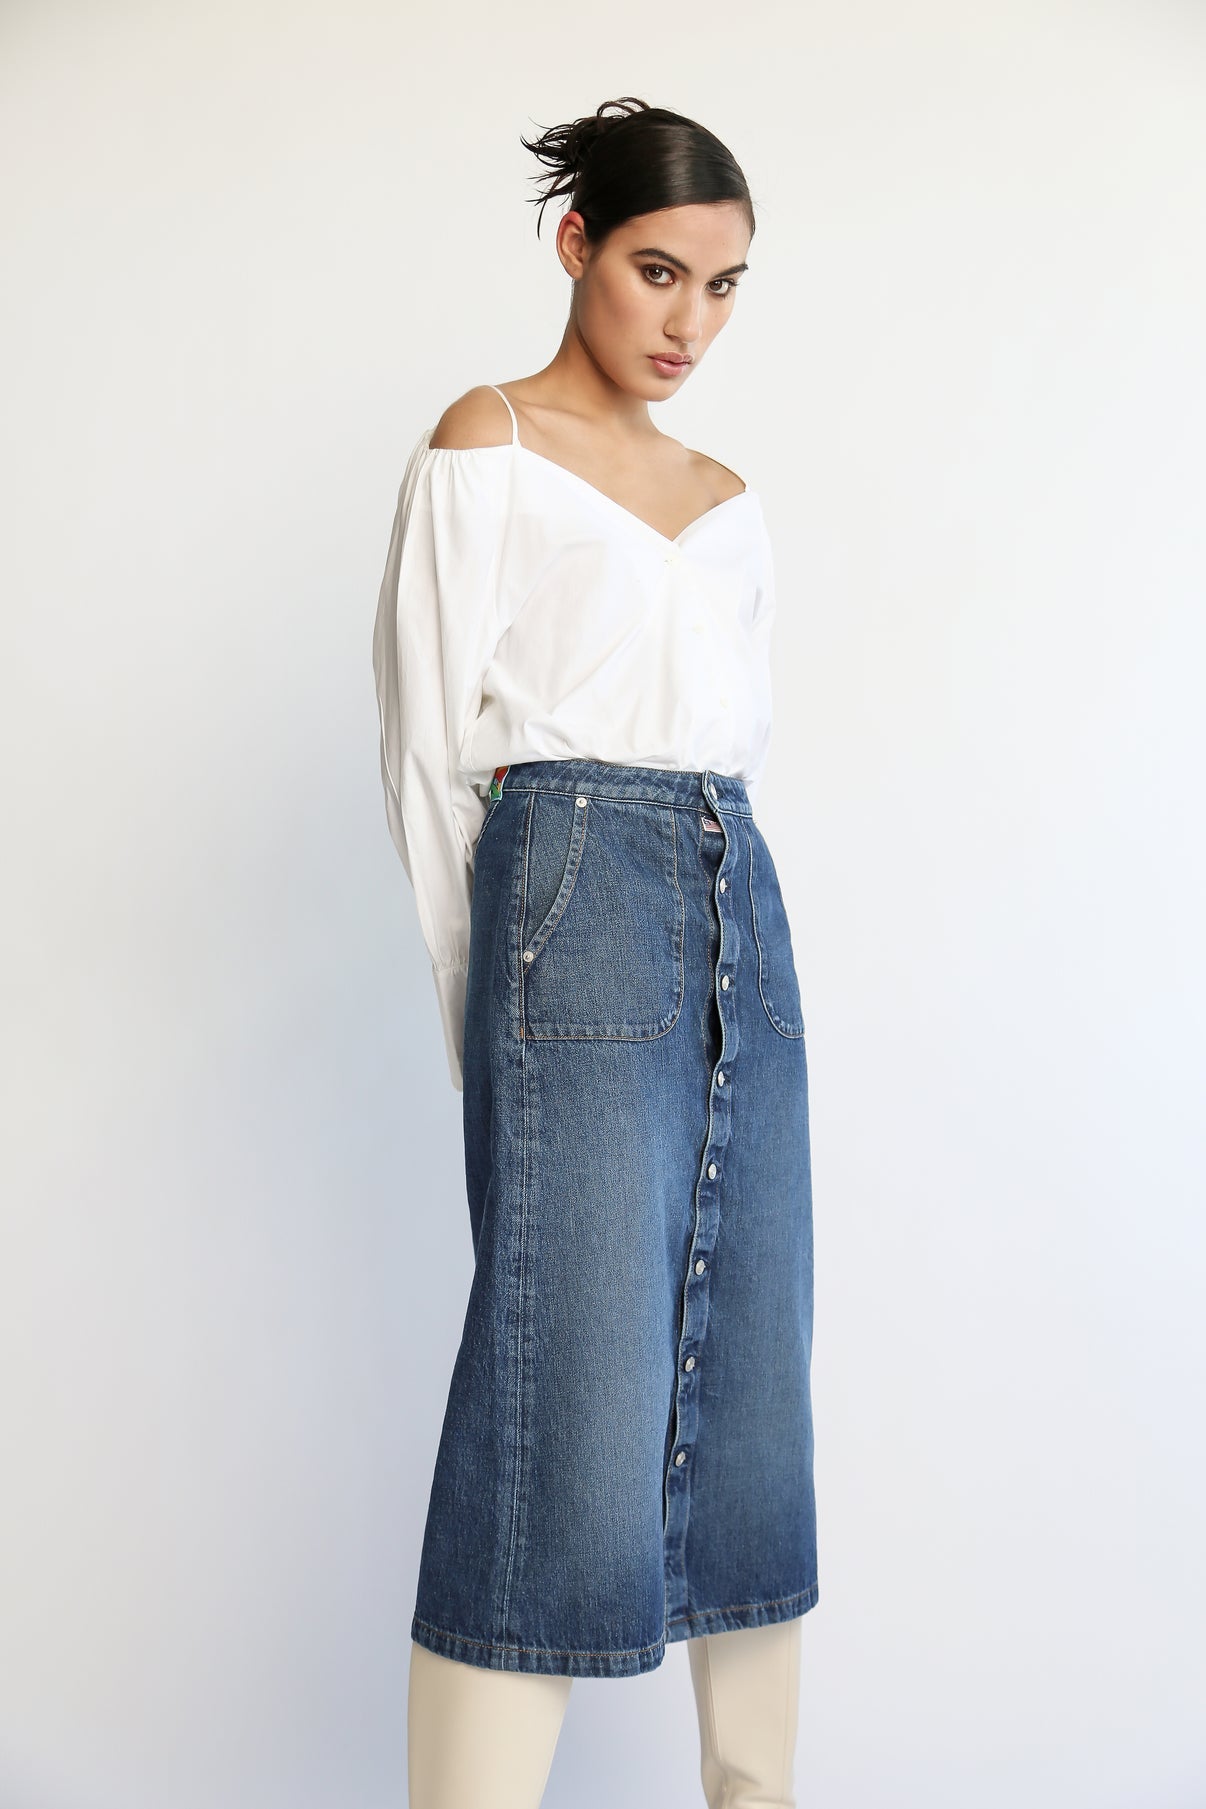 Tephy Skirt - Iconic